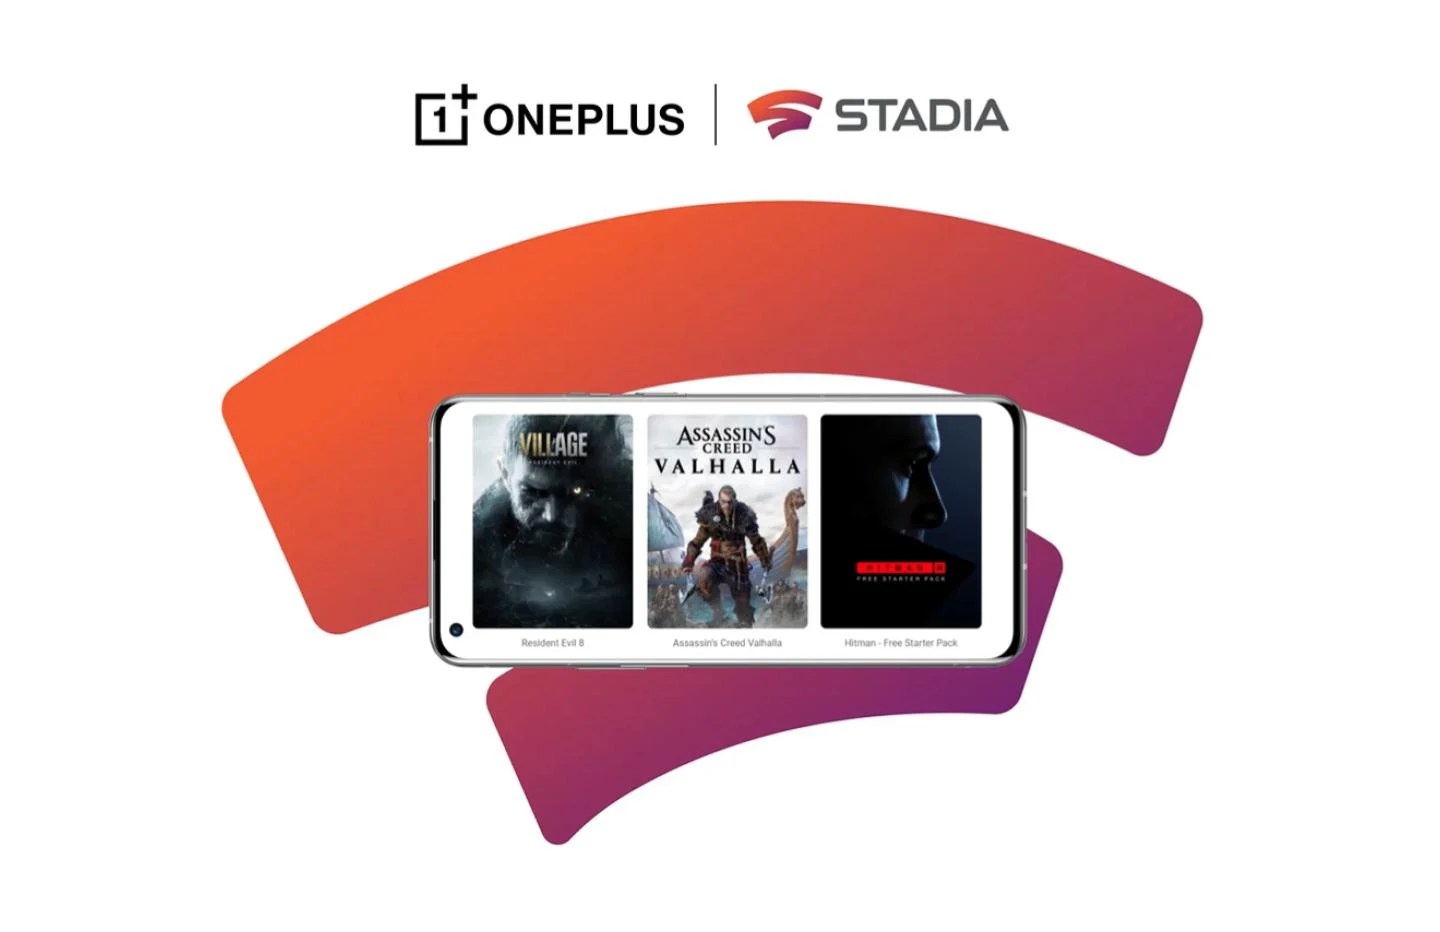 Un smartphone OnePlus acheté = un kit Stadia offert (manette et Chromecast Ultra)